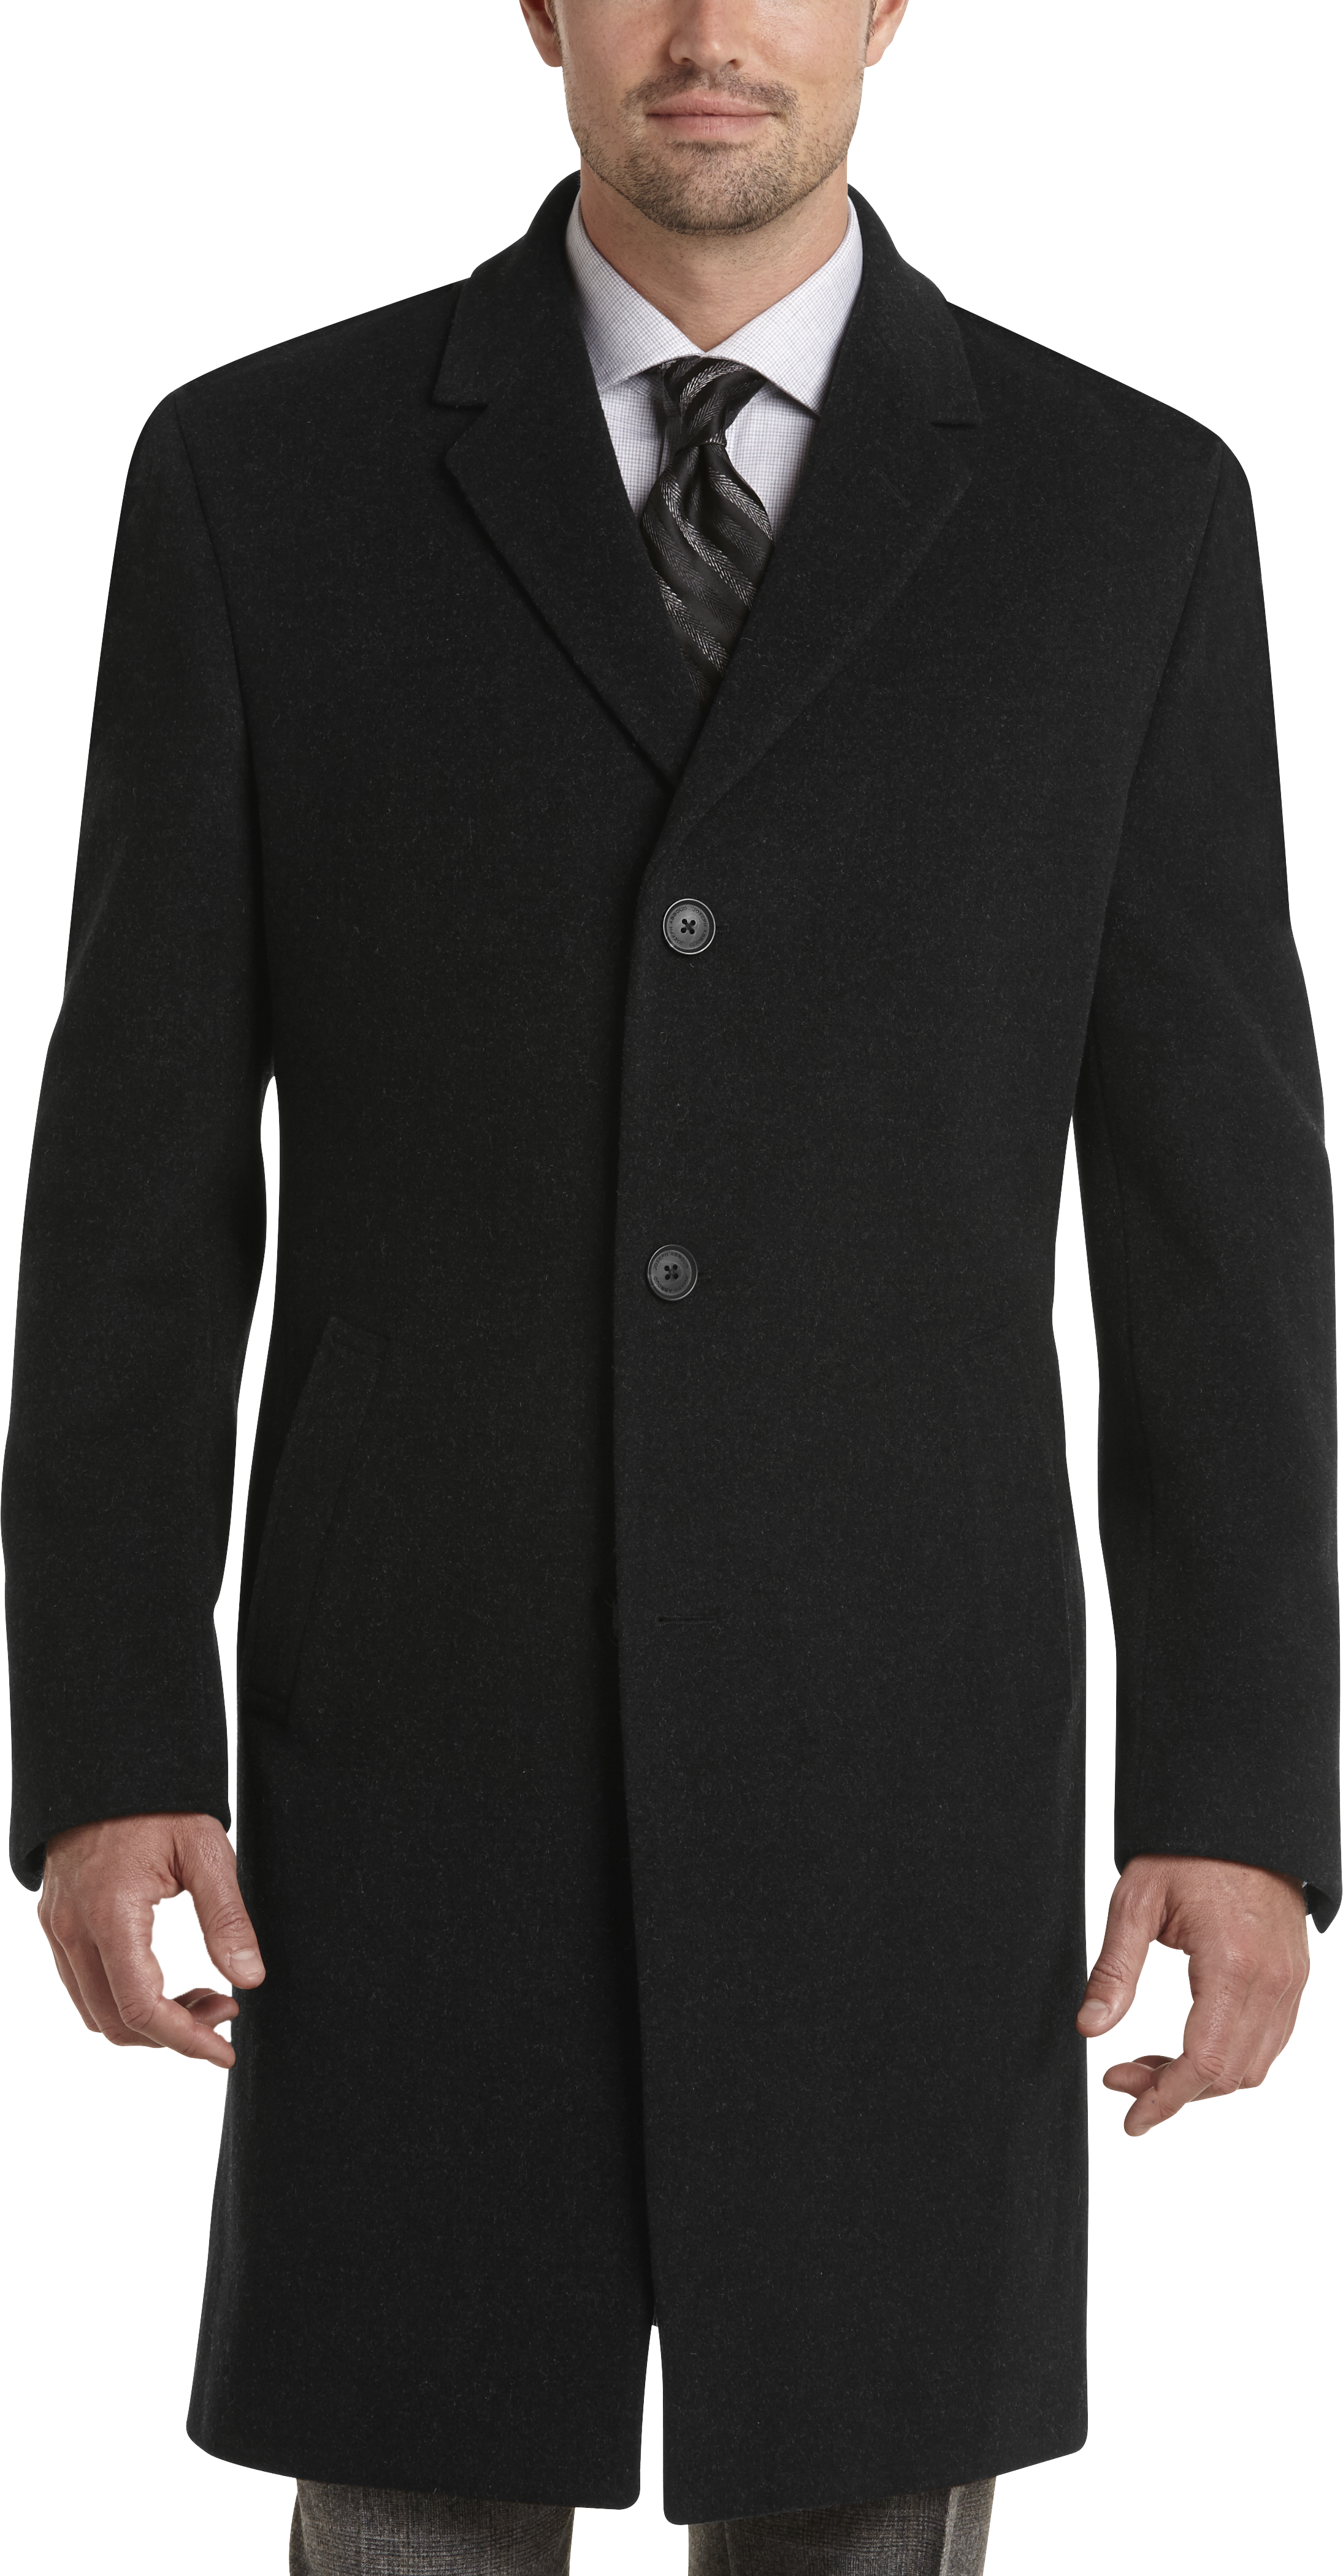 Trench Coats & Rain Coats for Men | Men's Wearhouse